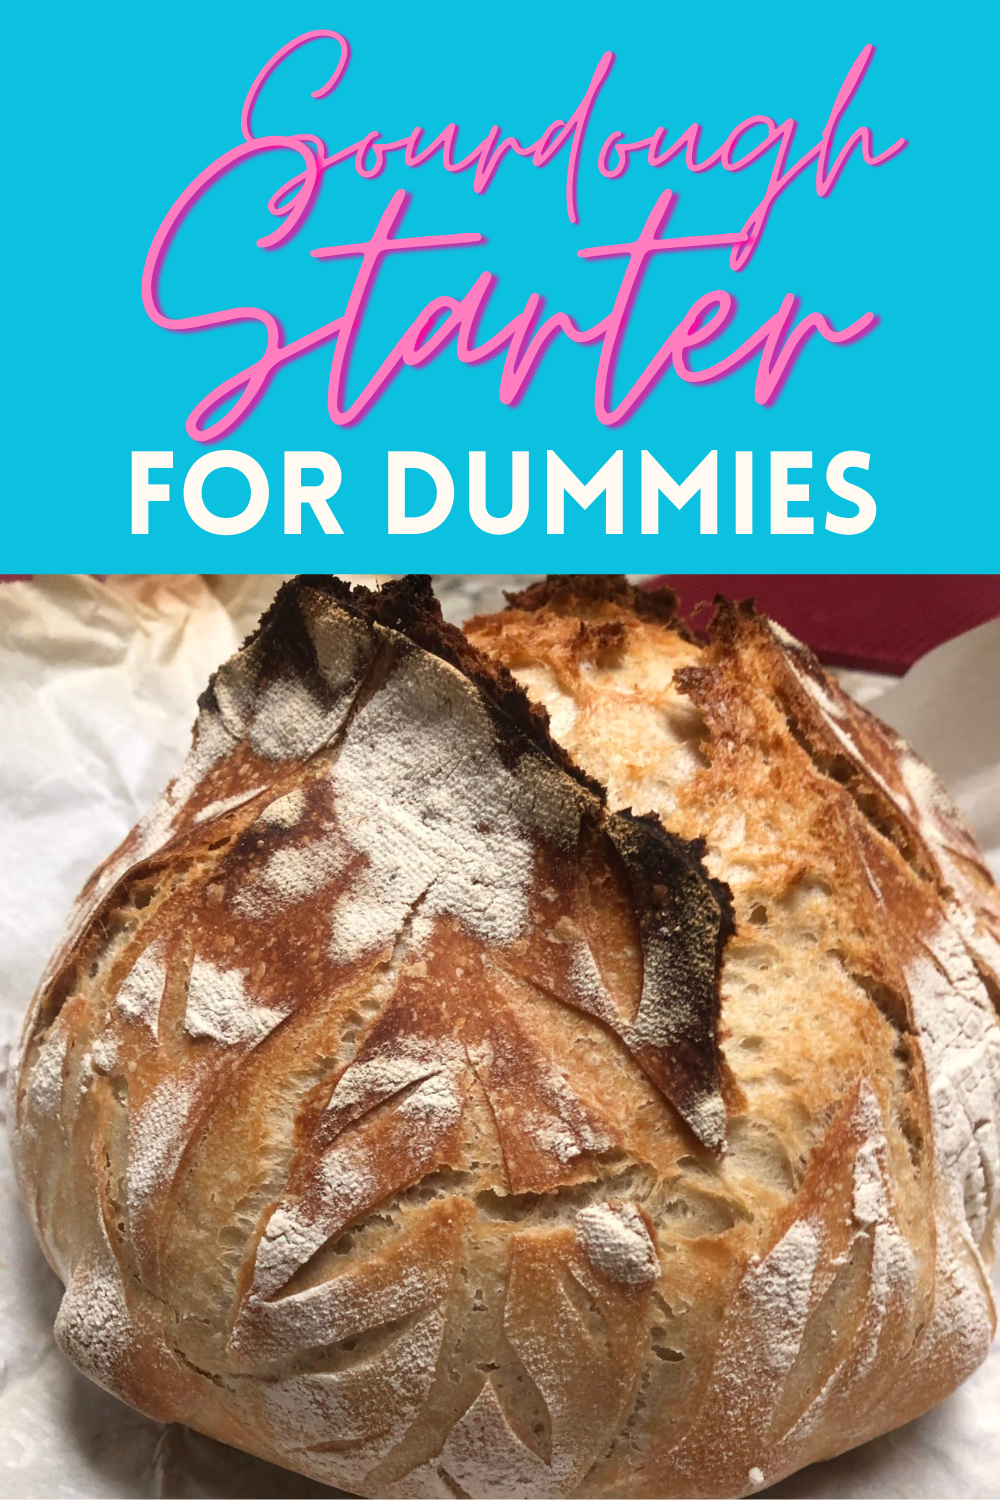 Homemade Sourdough Starter for Dummies (not really)